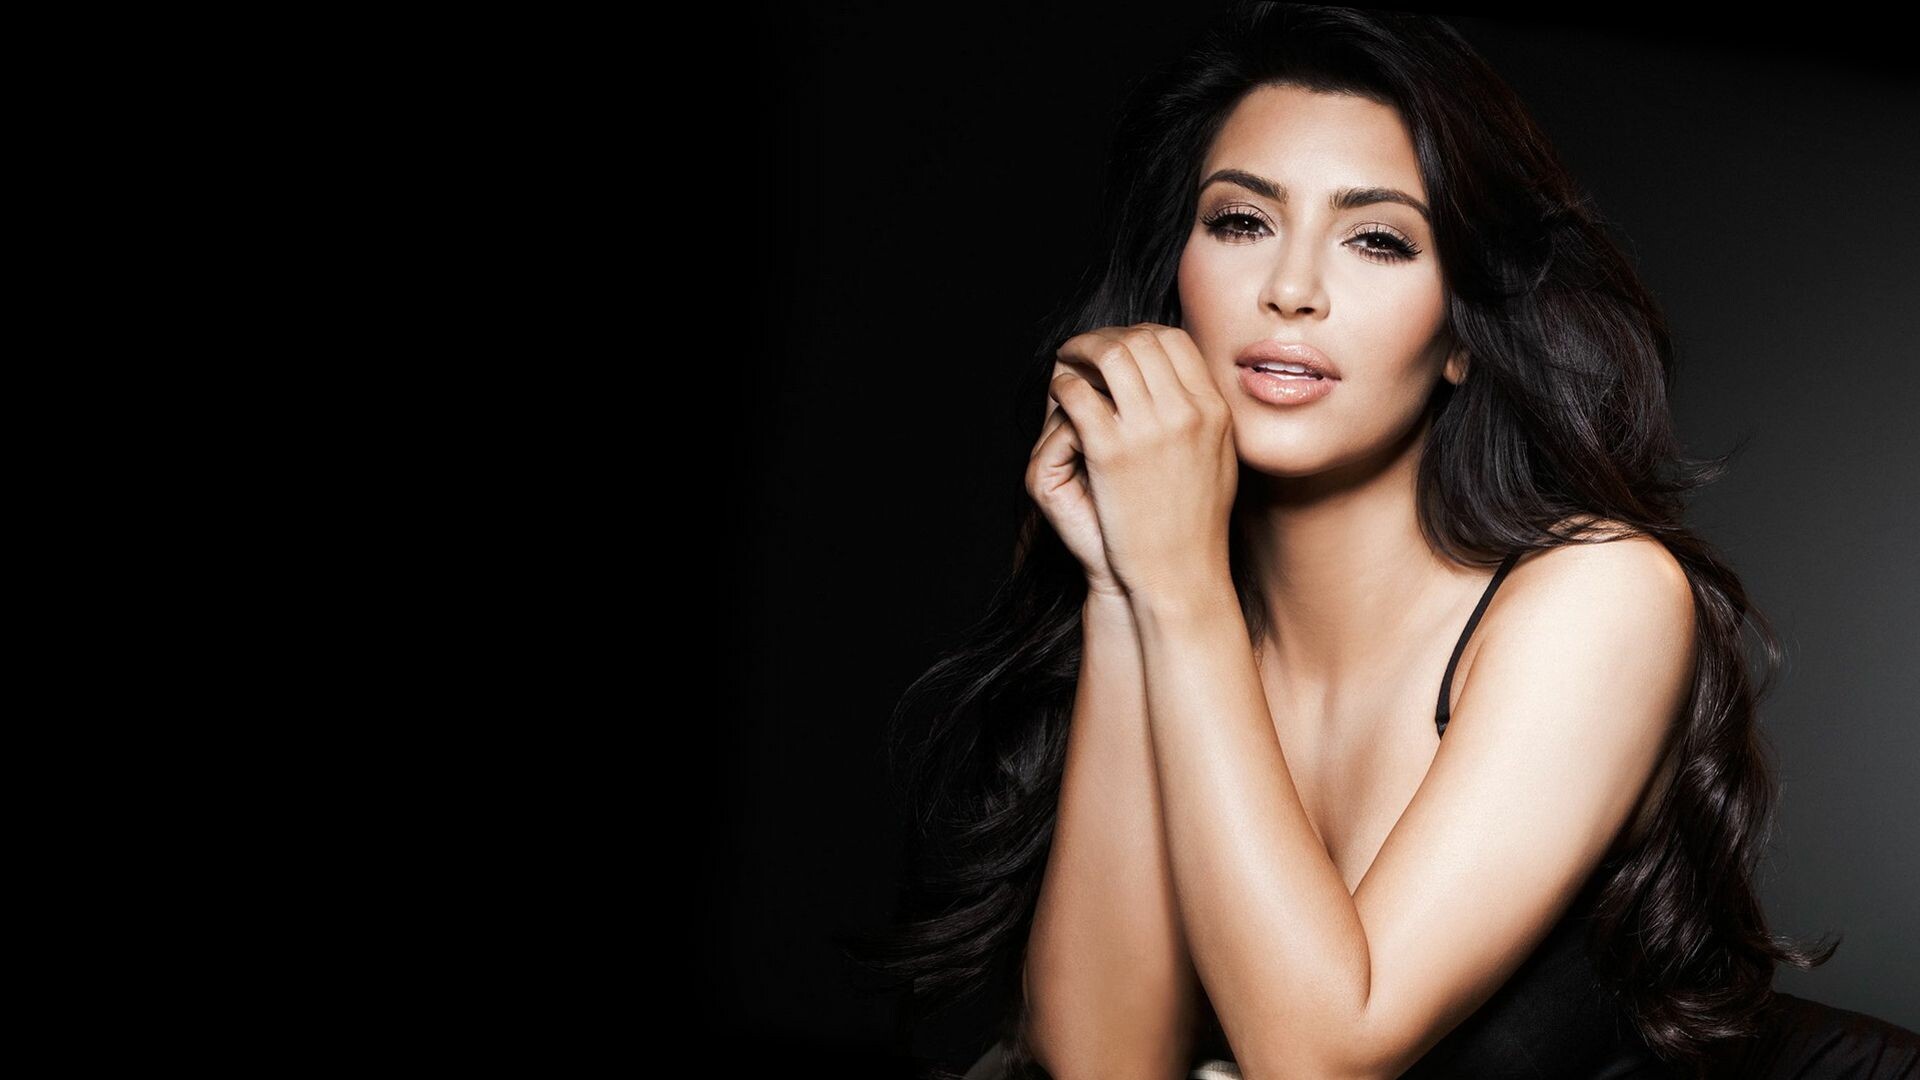 Kim Kardashian Hd Free Download Wallpaper